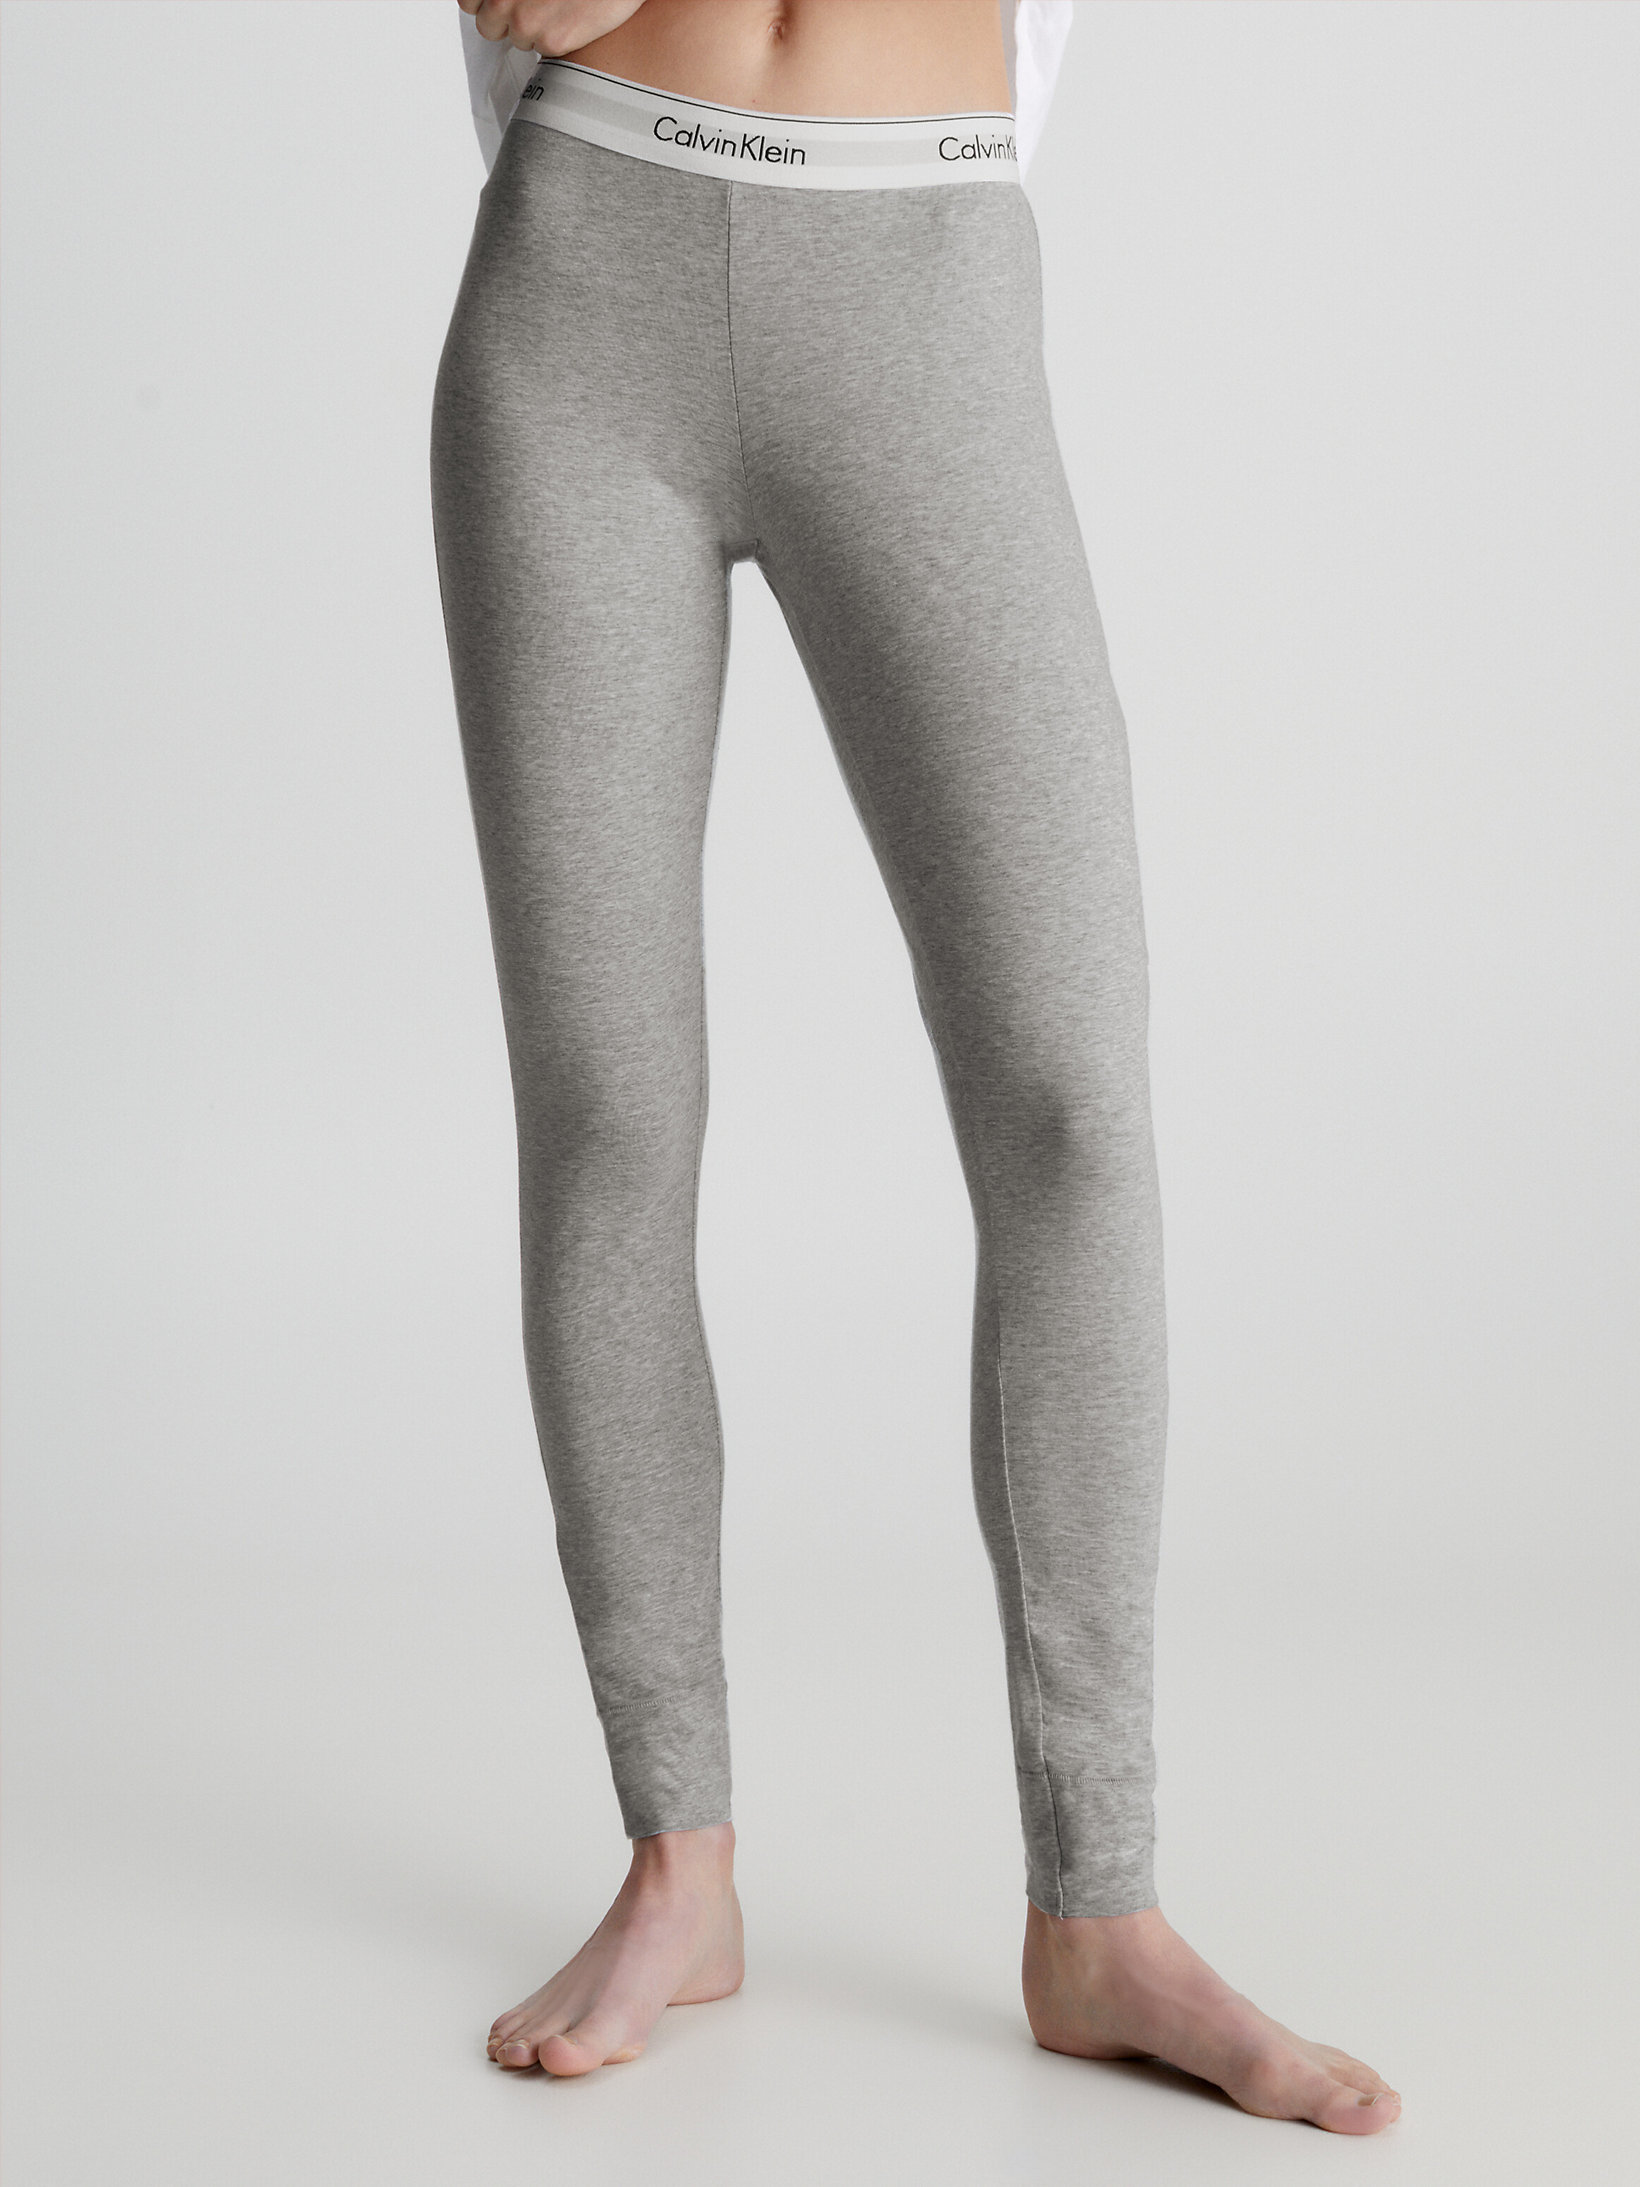 Introducir 48+ imagen calvin klein gray leggings